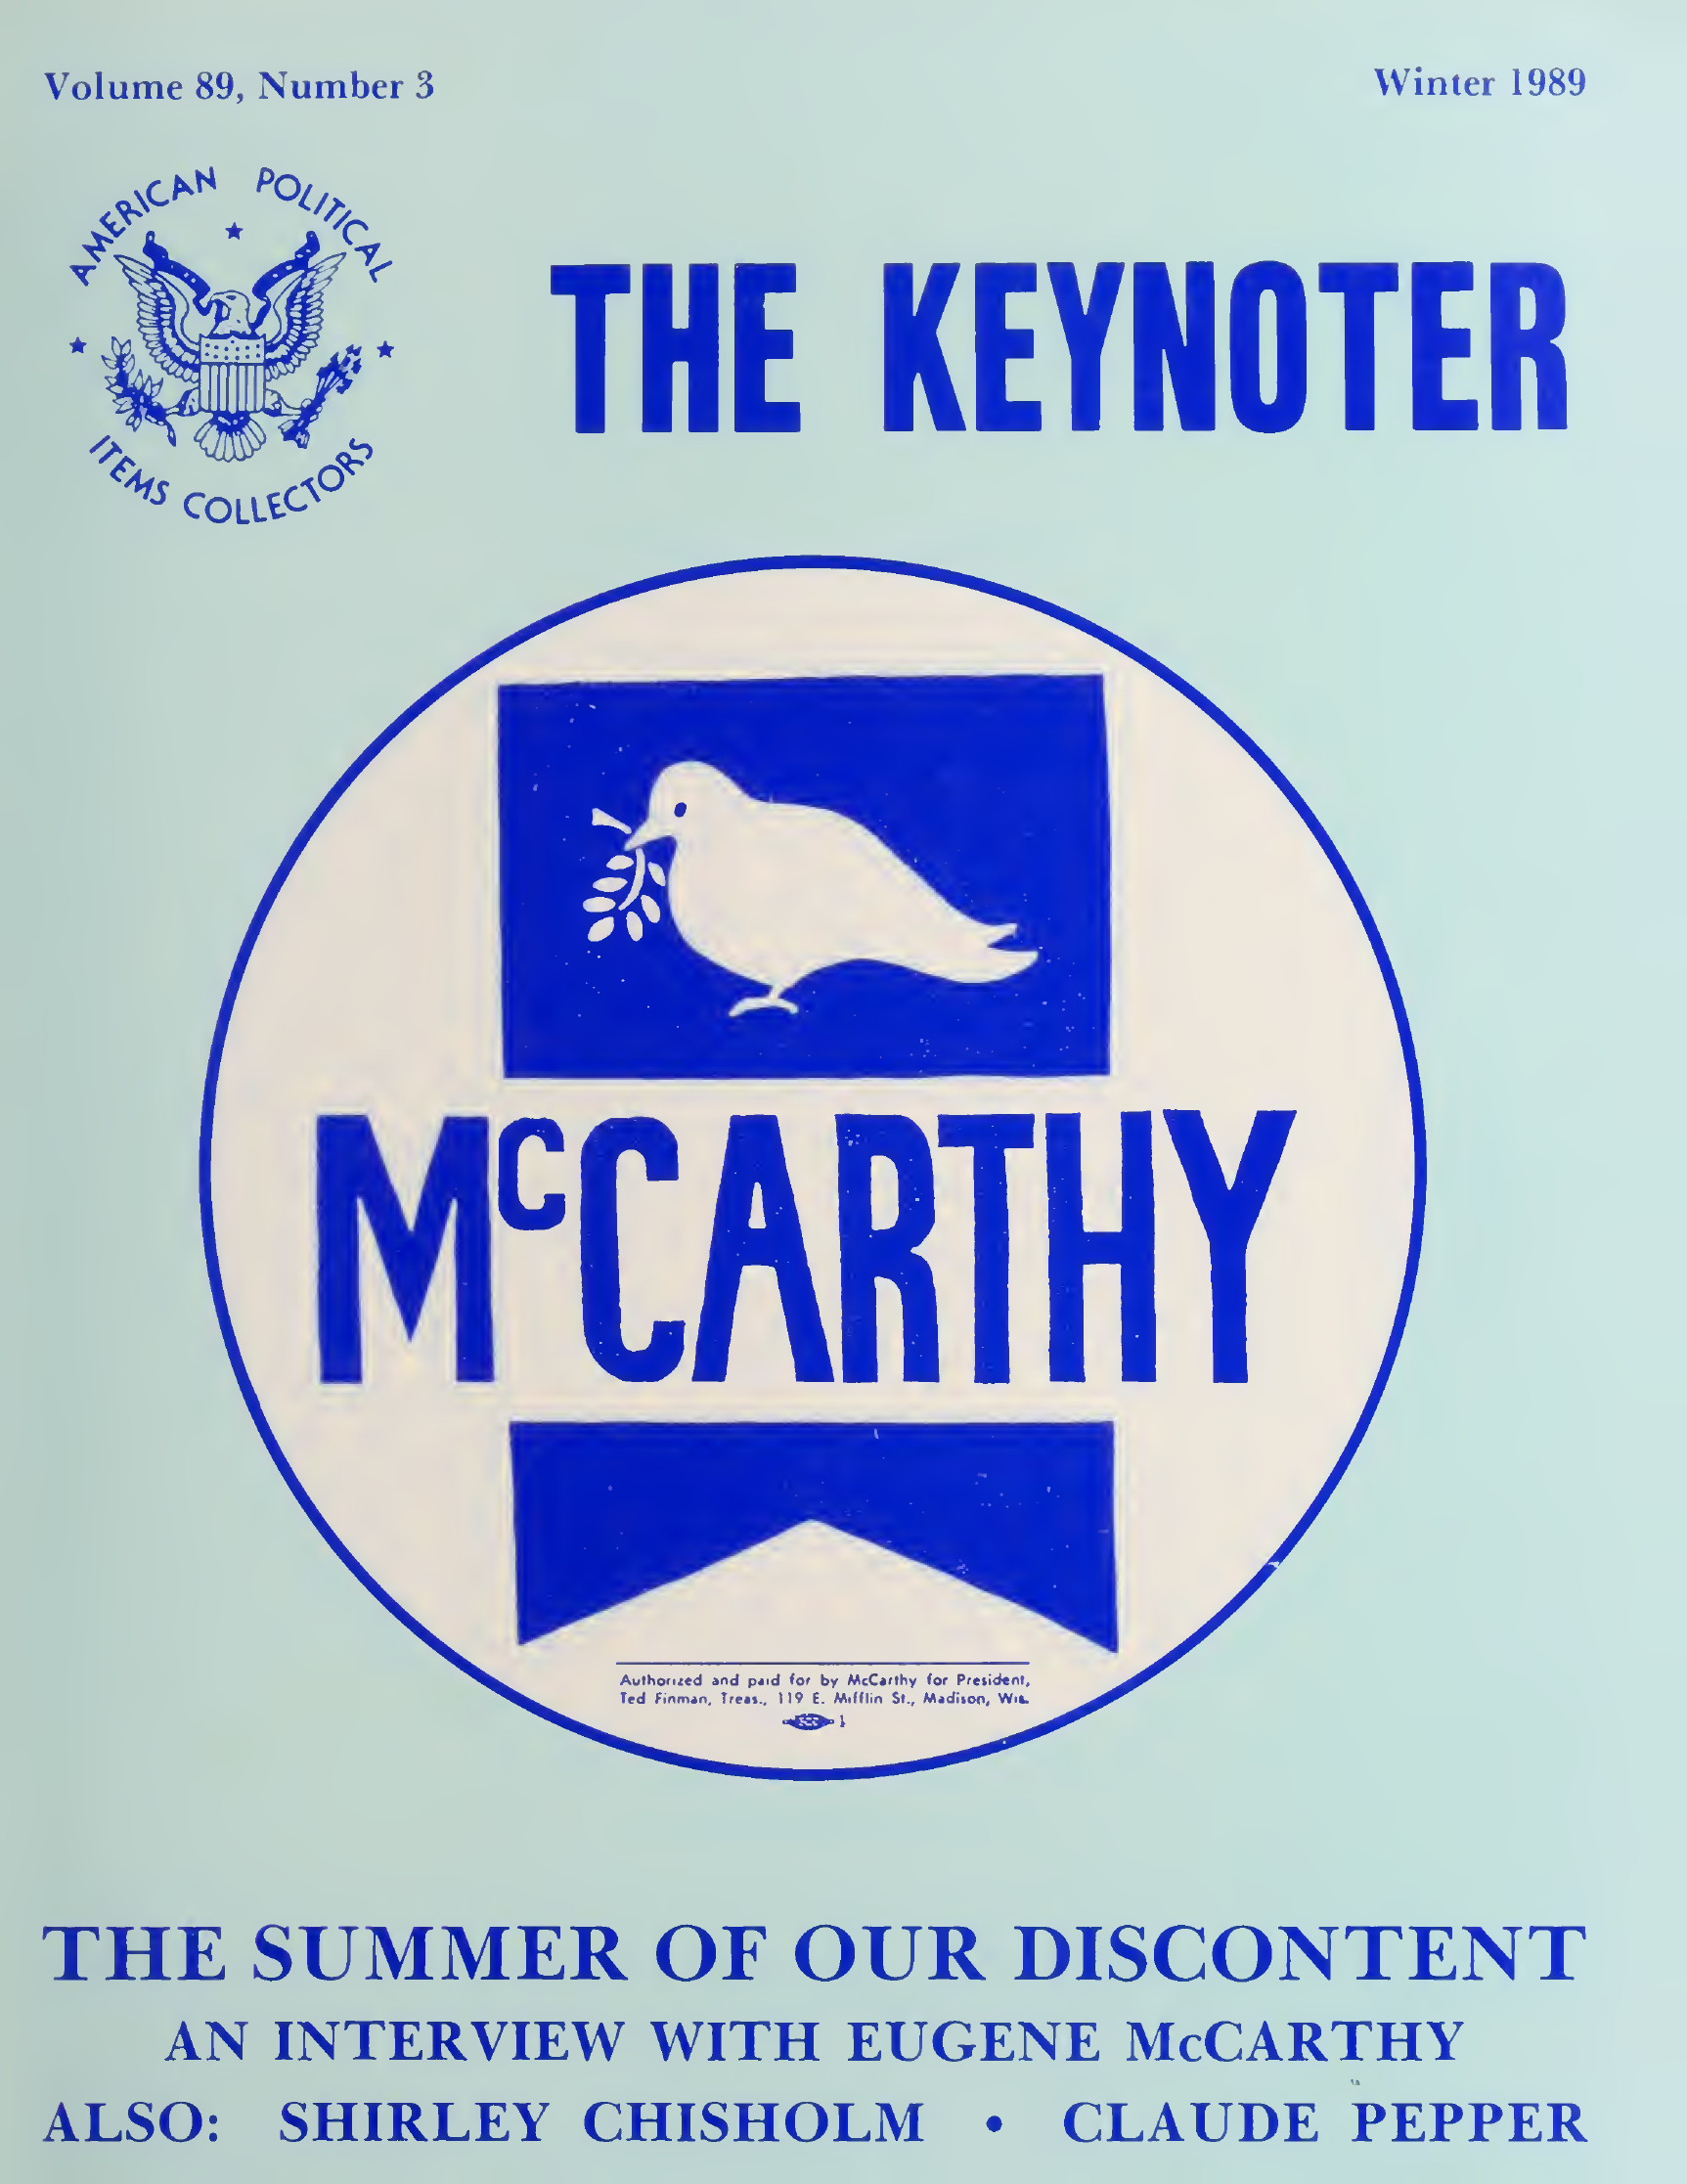 Keynoter 1989 - Winter - Issue 3